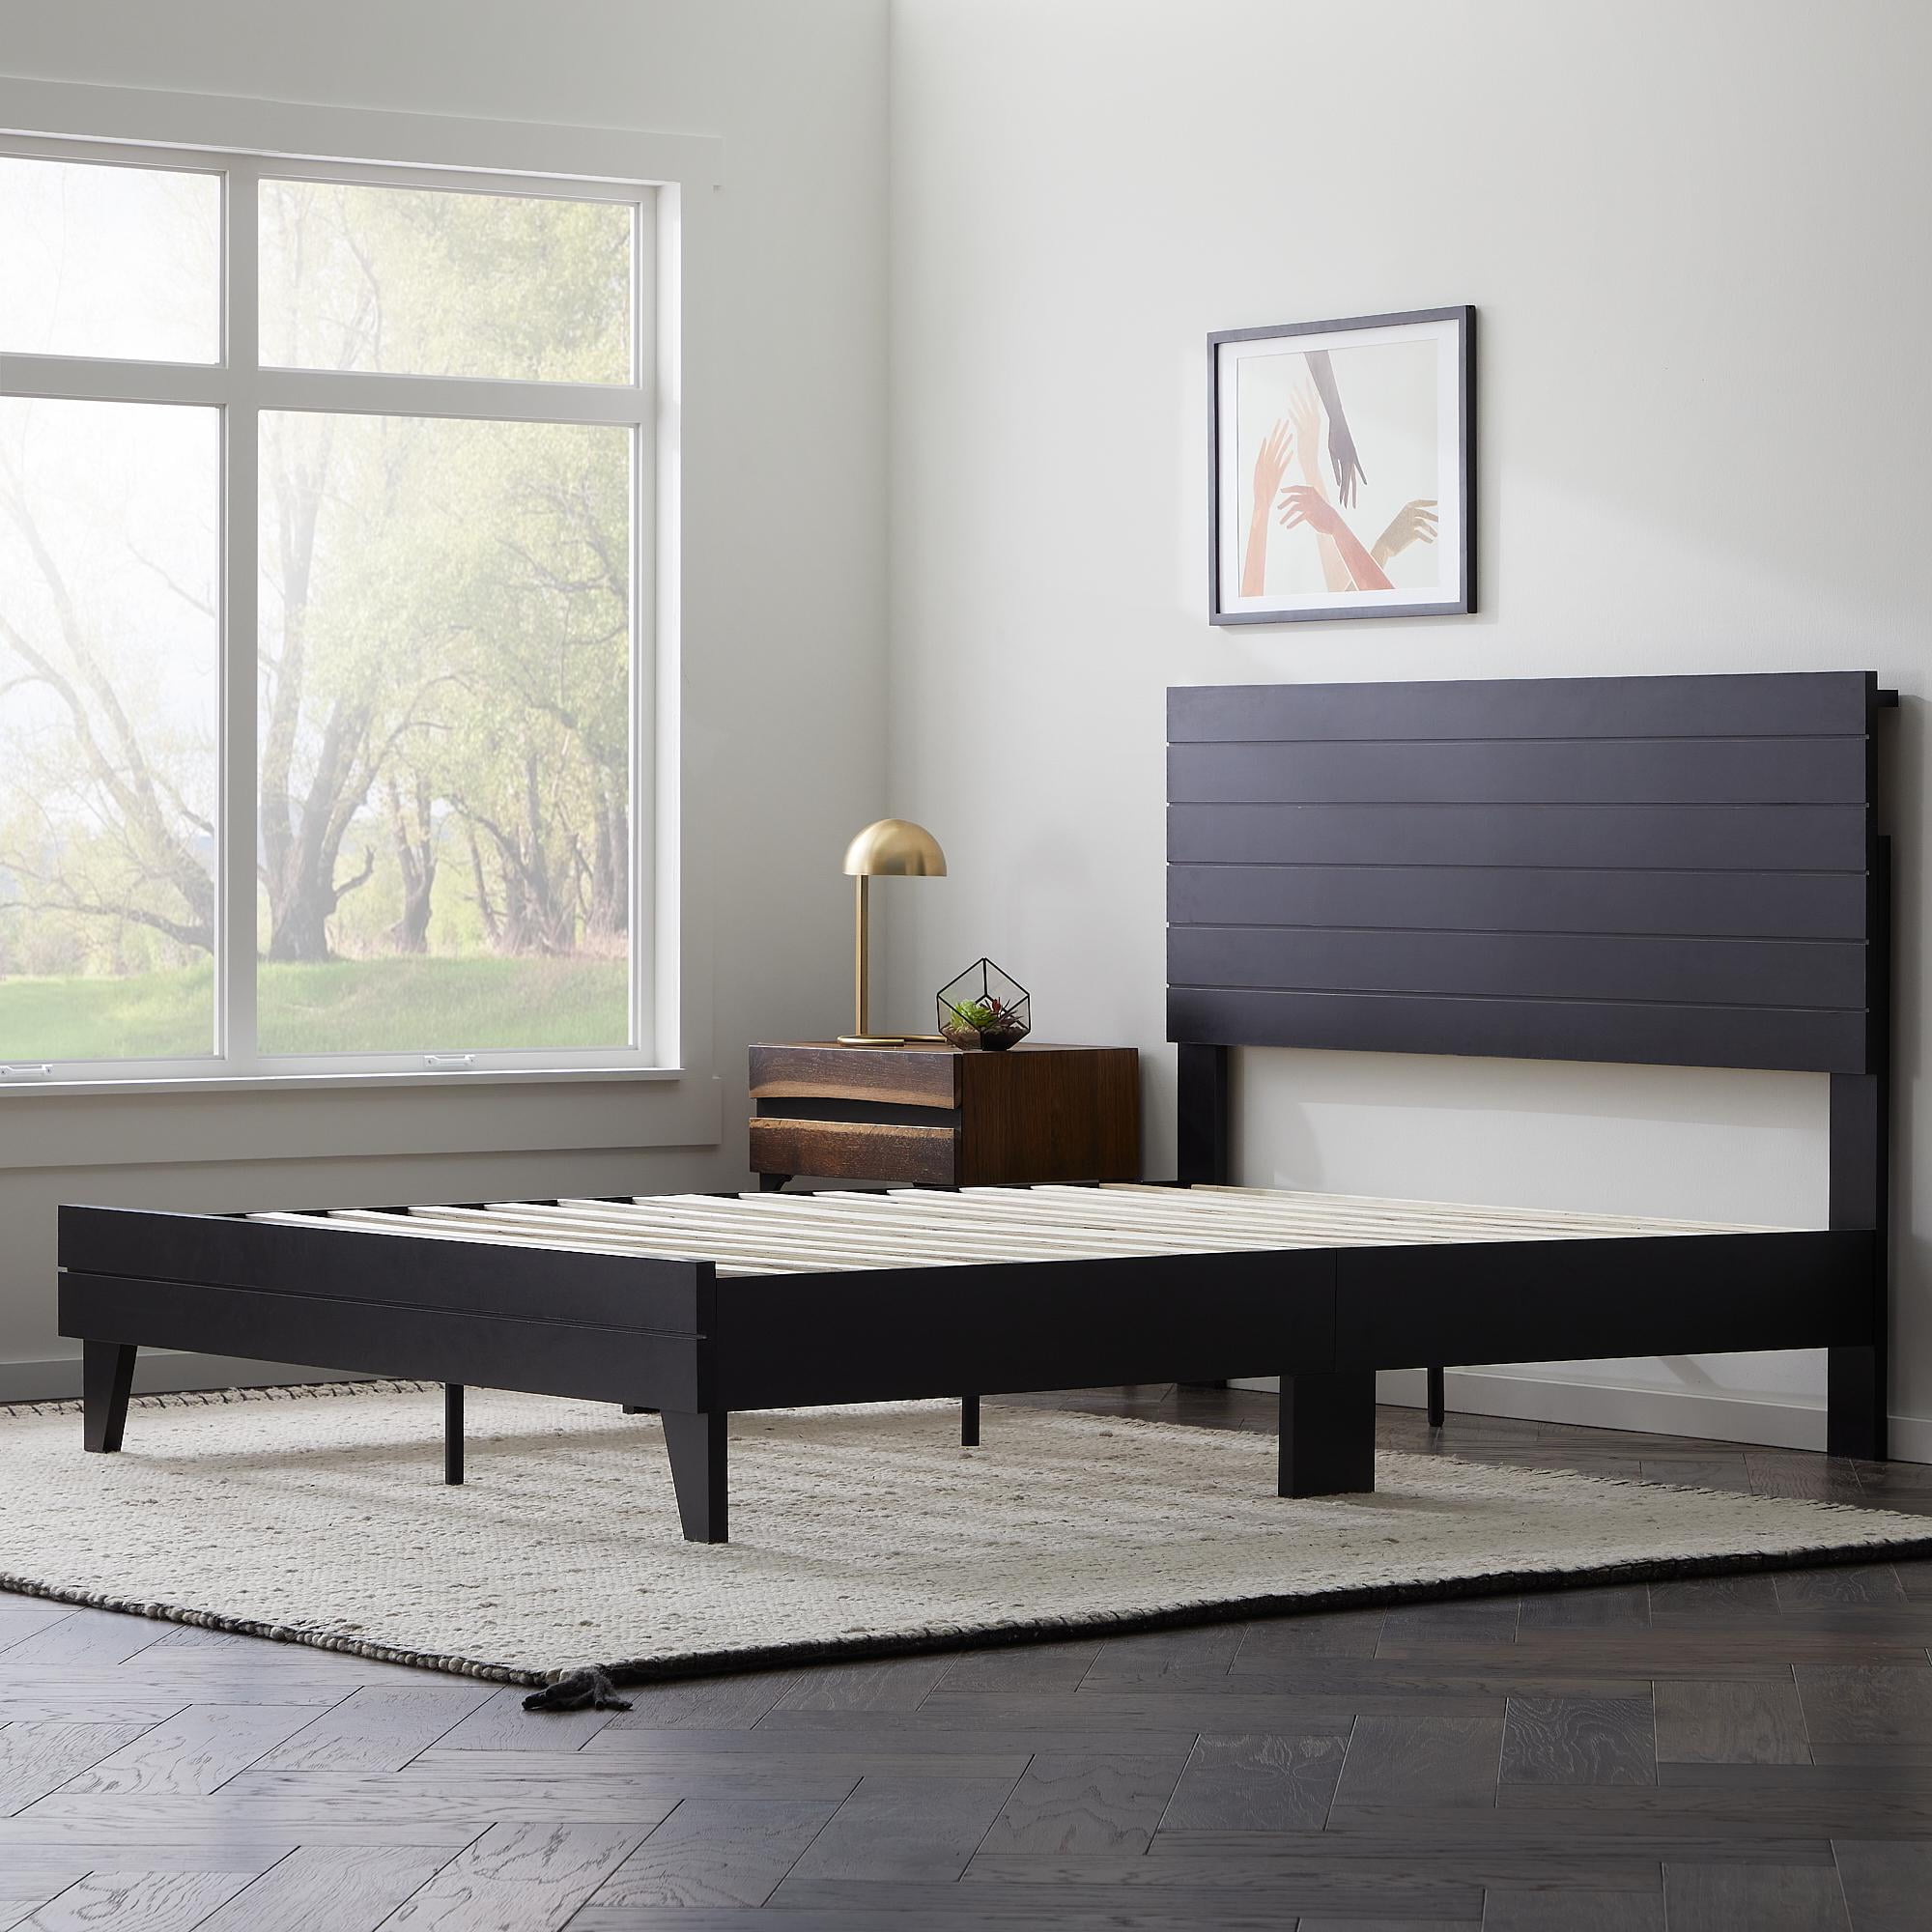 Deluxe Wood Platform Bed With Headboard, Zinus Vivek 37 Deluxe Wood Platform Bed Frame With Headboard Queen